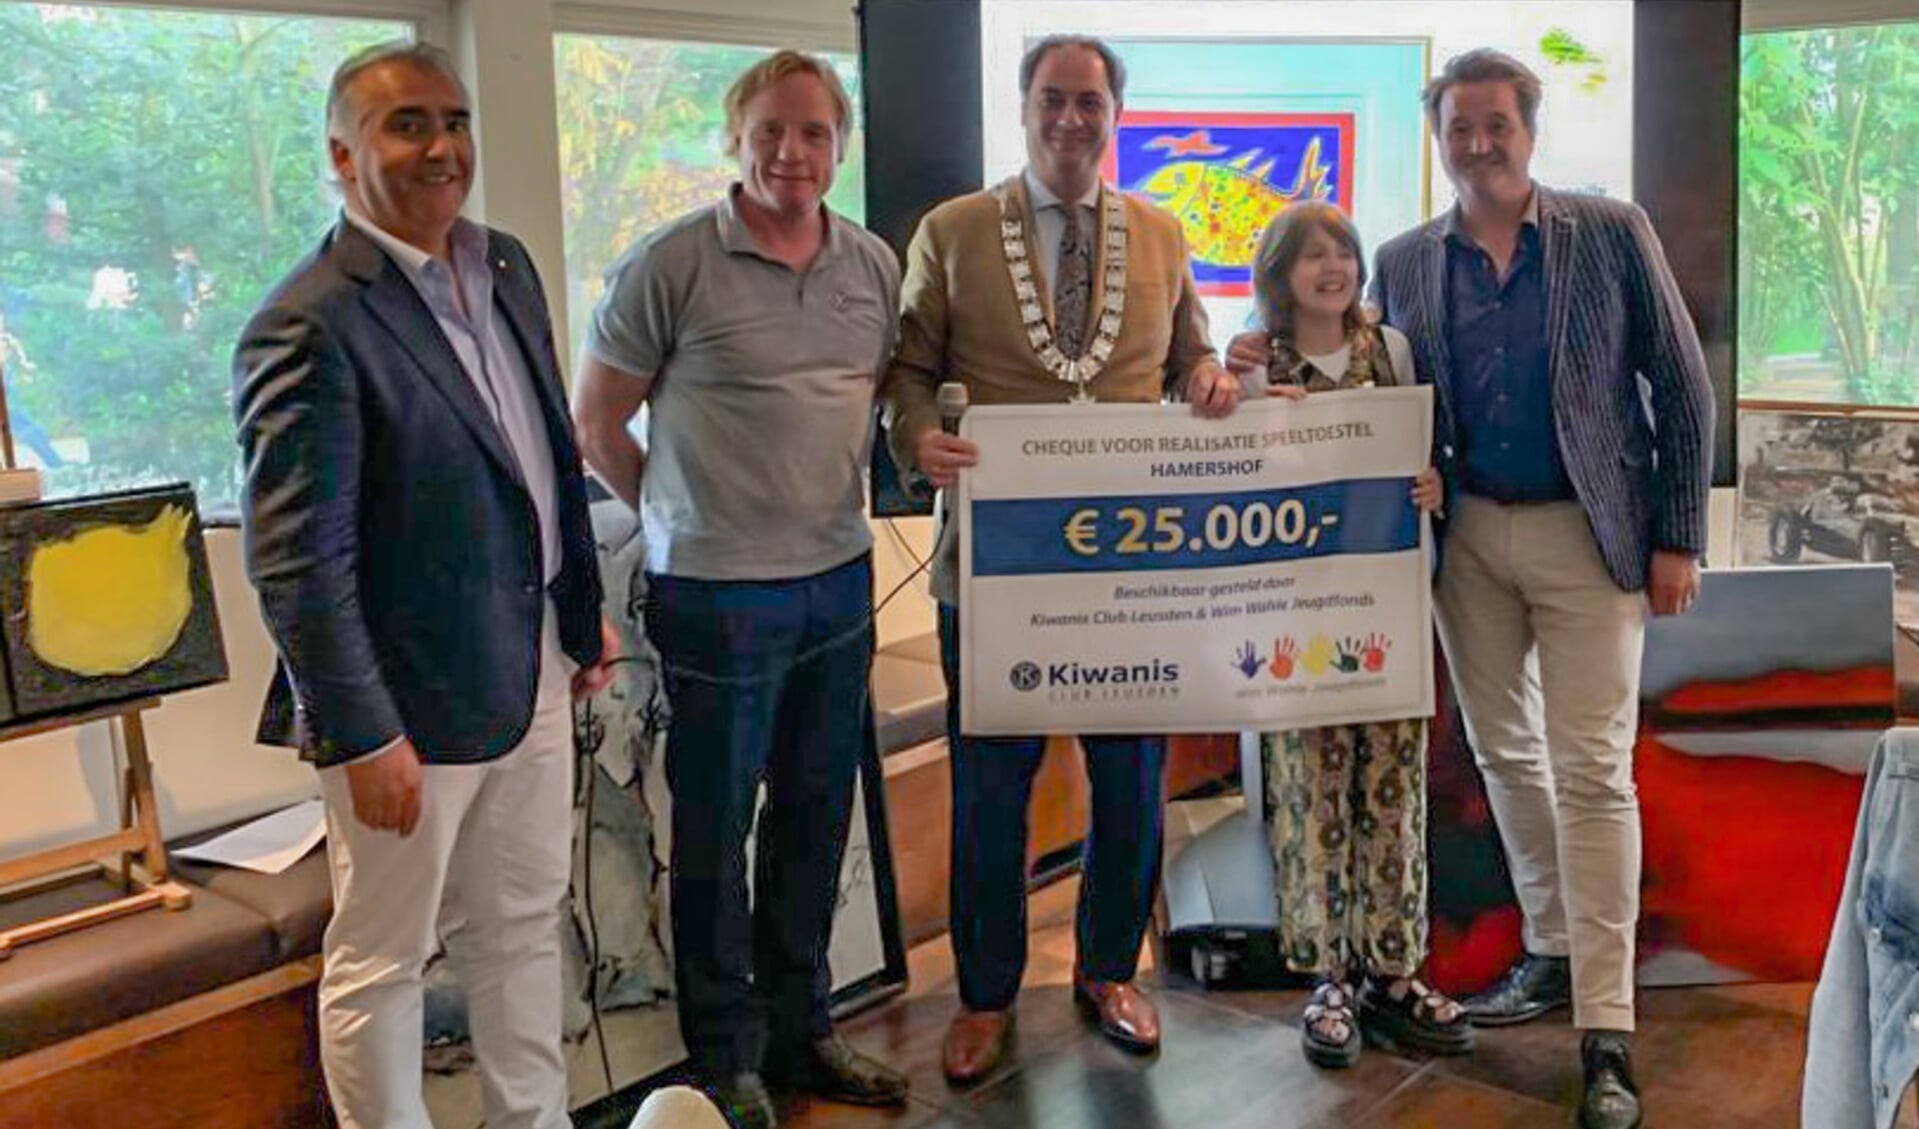 Kiwanis Club Leusden en het Wim Wahle Jeugdfonds schenken € 25.000 t.b.v. een modern speeltoestel in de vernieuwde Hamershof